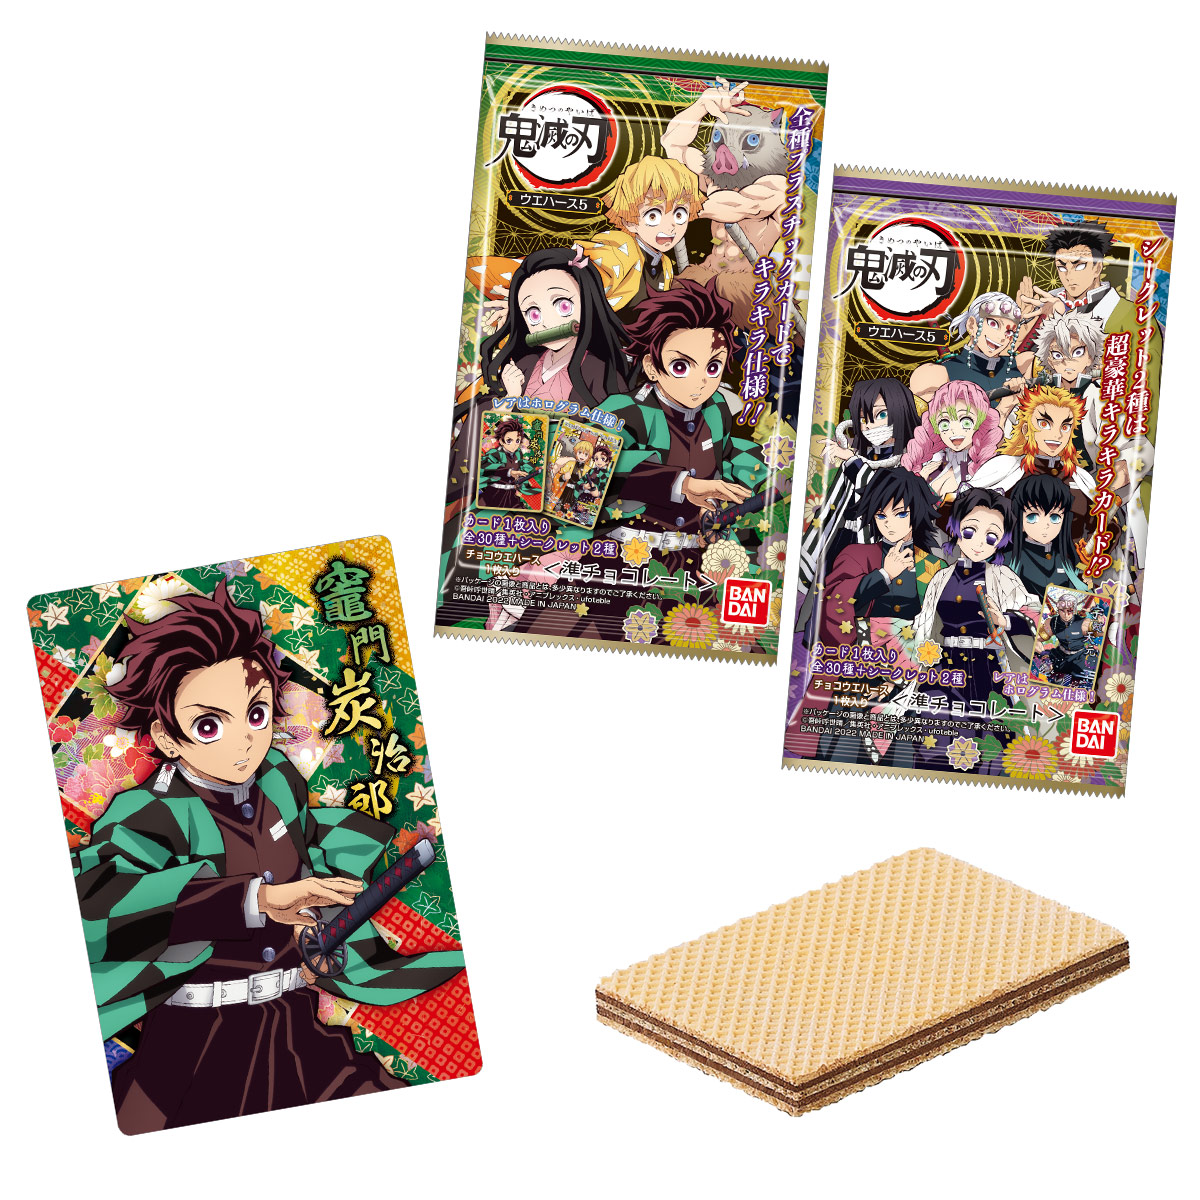 Wafer Card Vol.5 Demon Slayer Kimetsu no Yaiba Uzui Kyojuro Rengoku Muichiro Tokito Mitsuri Kanroji Candy Toy BANDAI